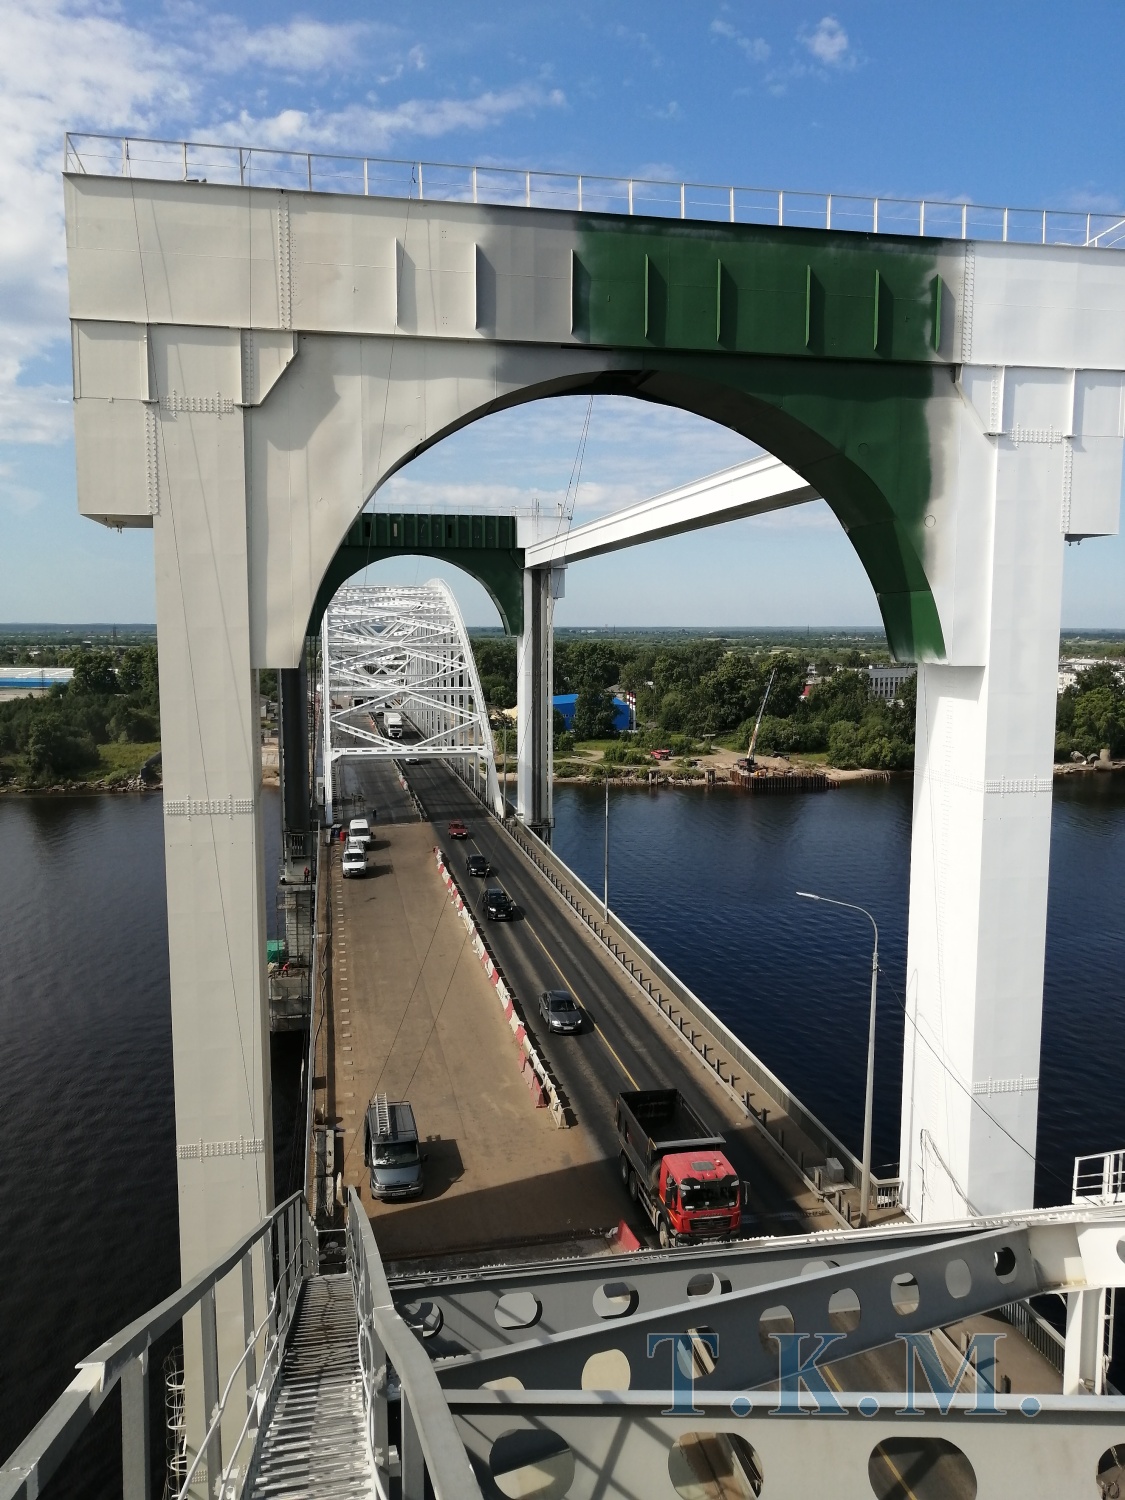 Краснофлотский мост через реку Северная Двина в г. Архангельске